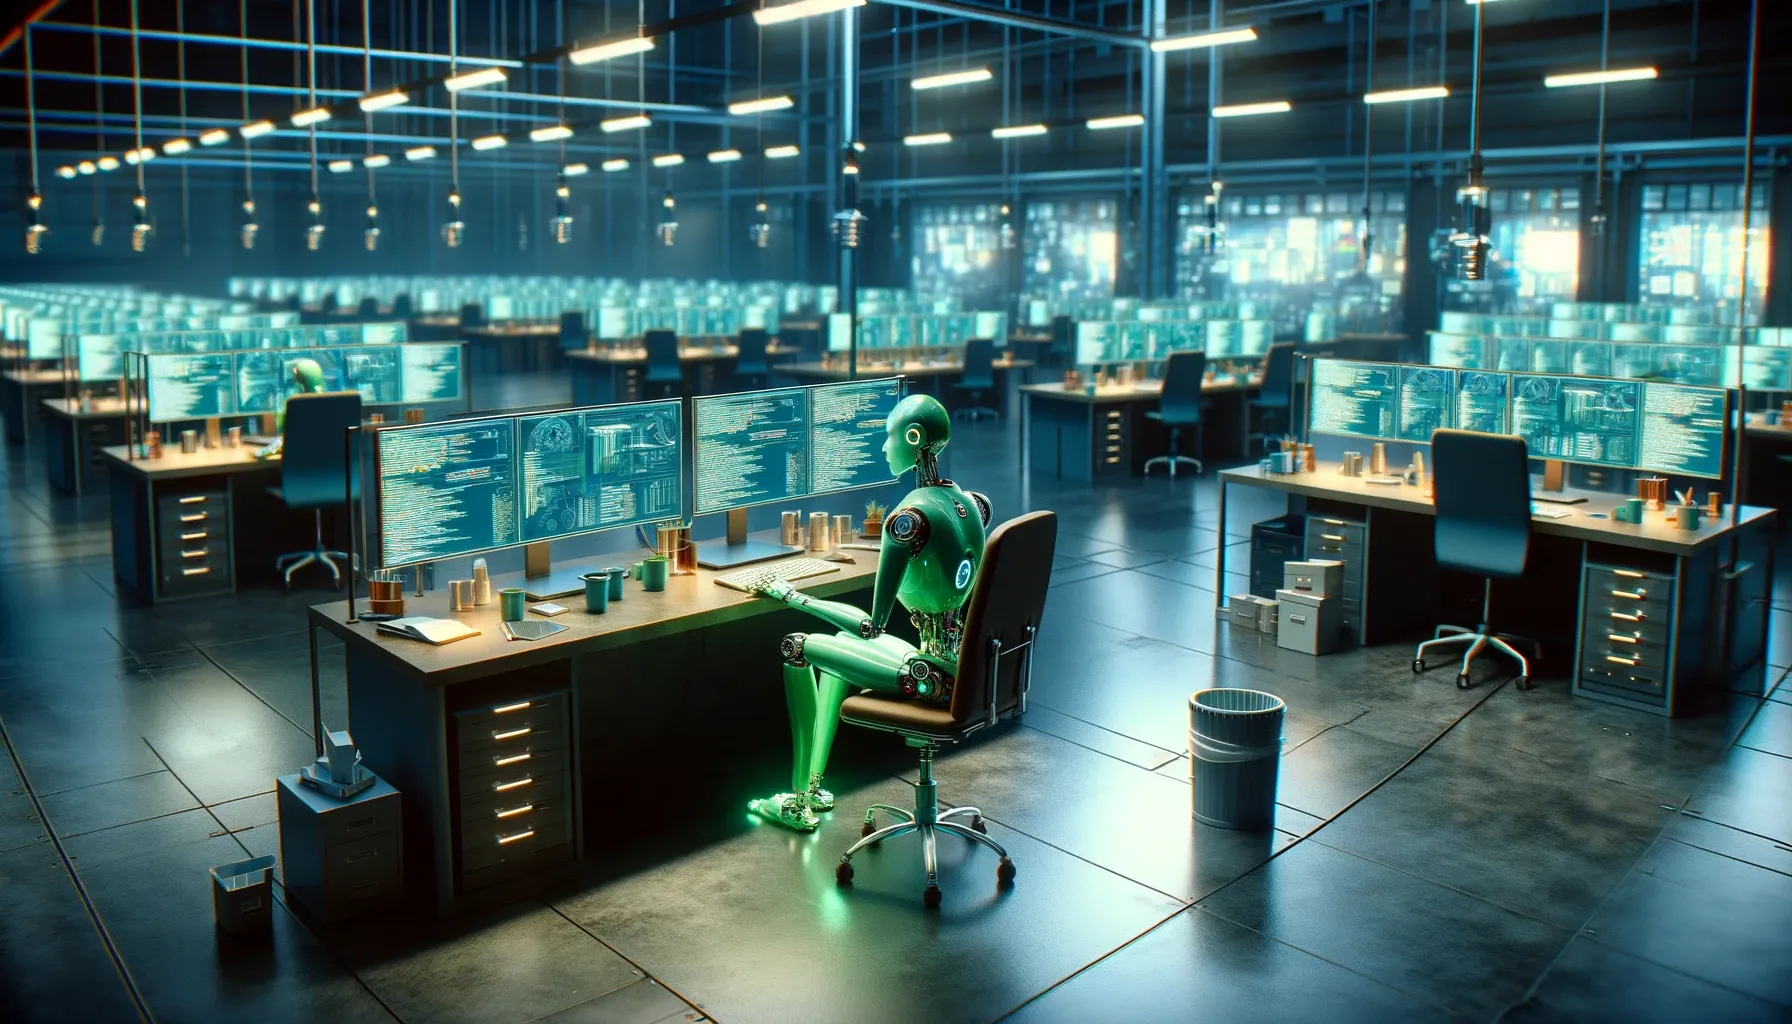 Robô verde automatizando tarefas em escritório futurista, simbolizando eficiência e colaboração humano-robô para inovação tecnológica.